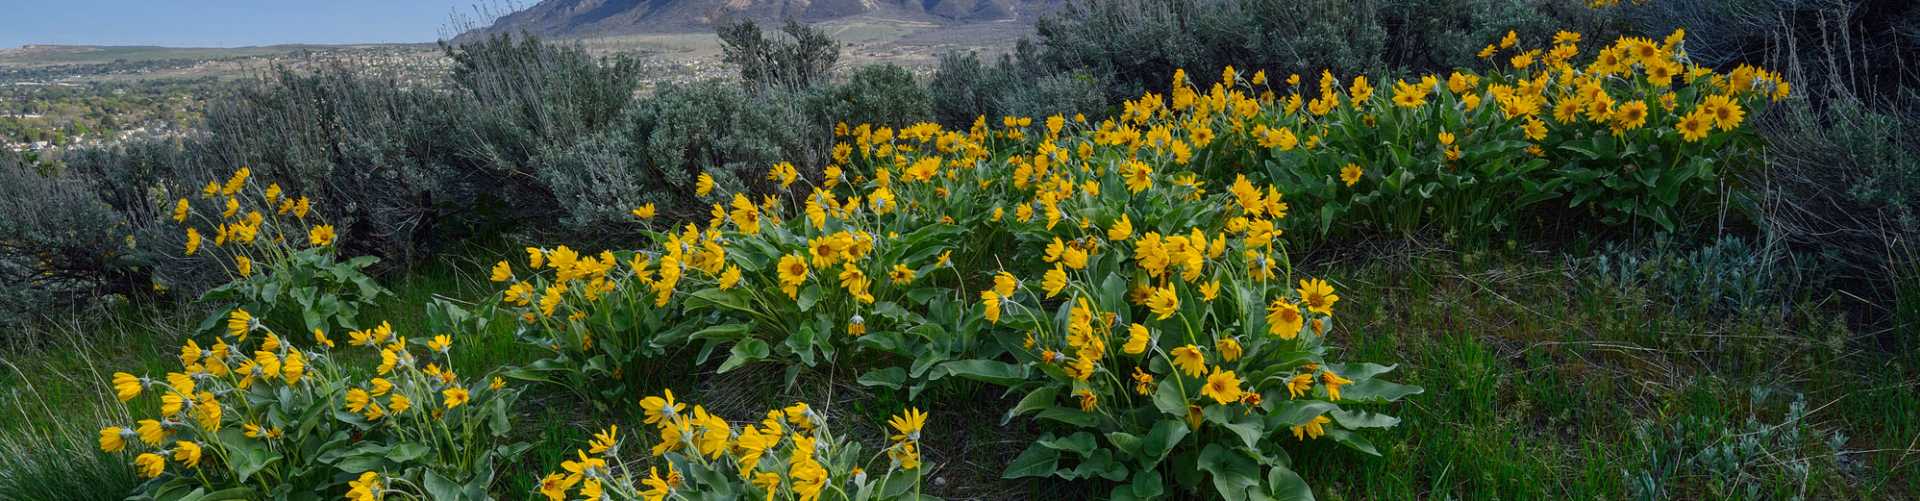 Wildflowers - A field full of wildflowers on Ben Lomond Peak